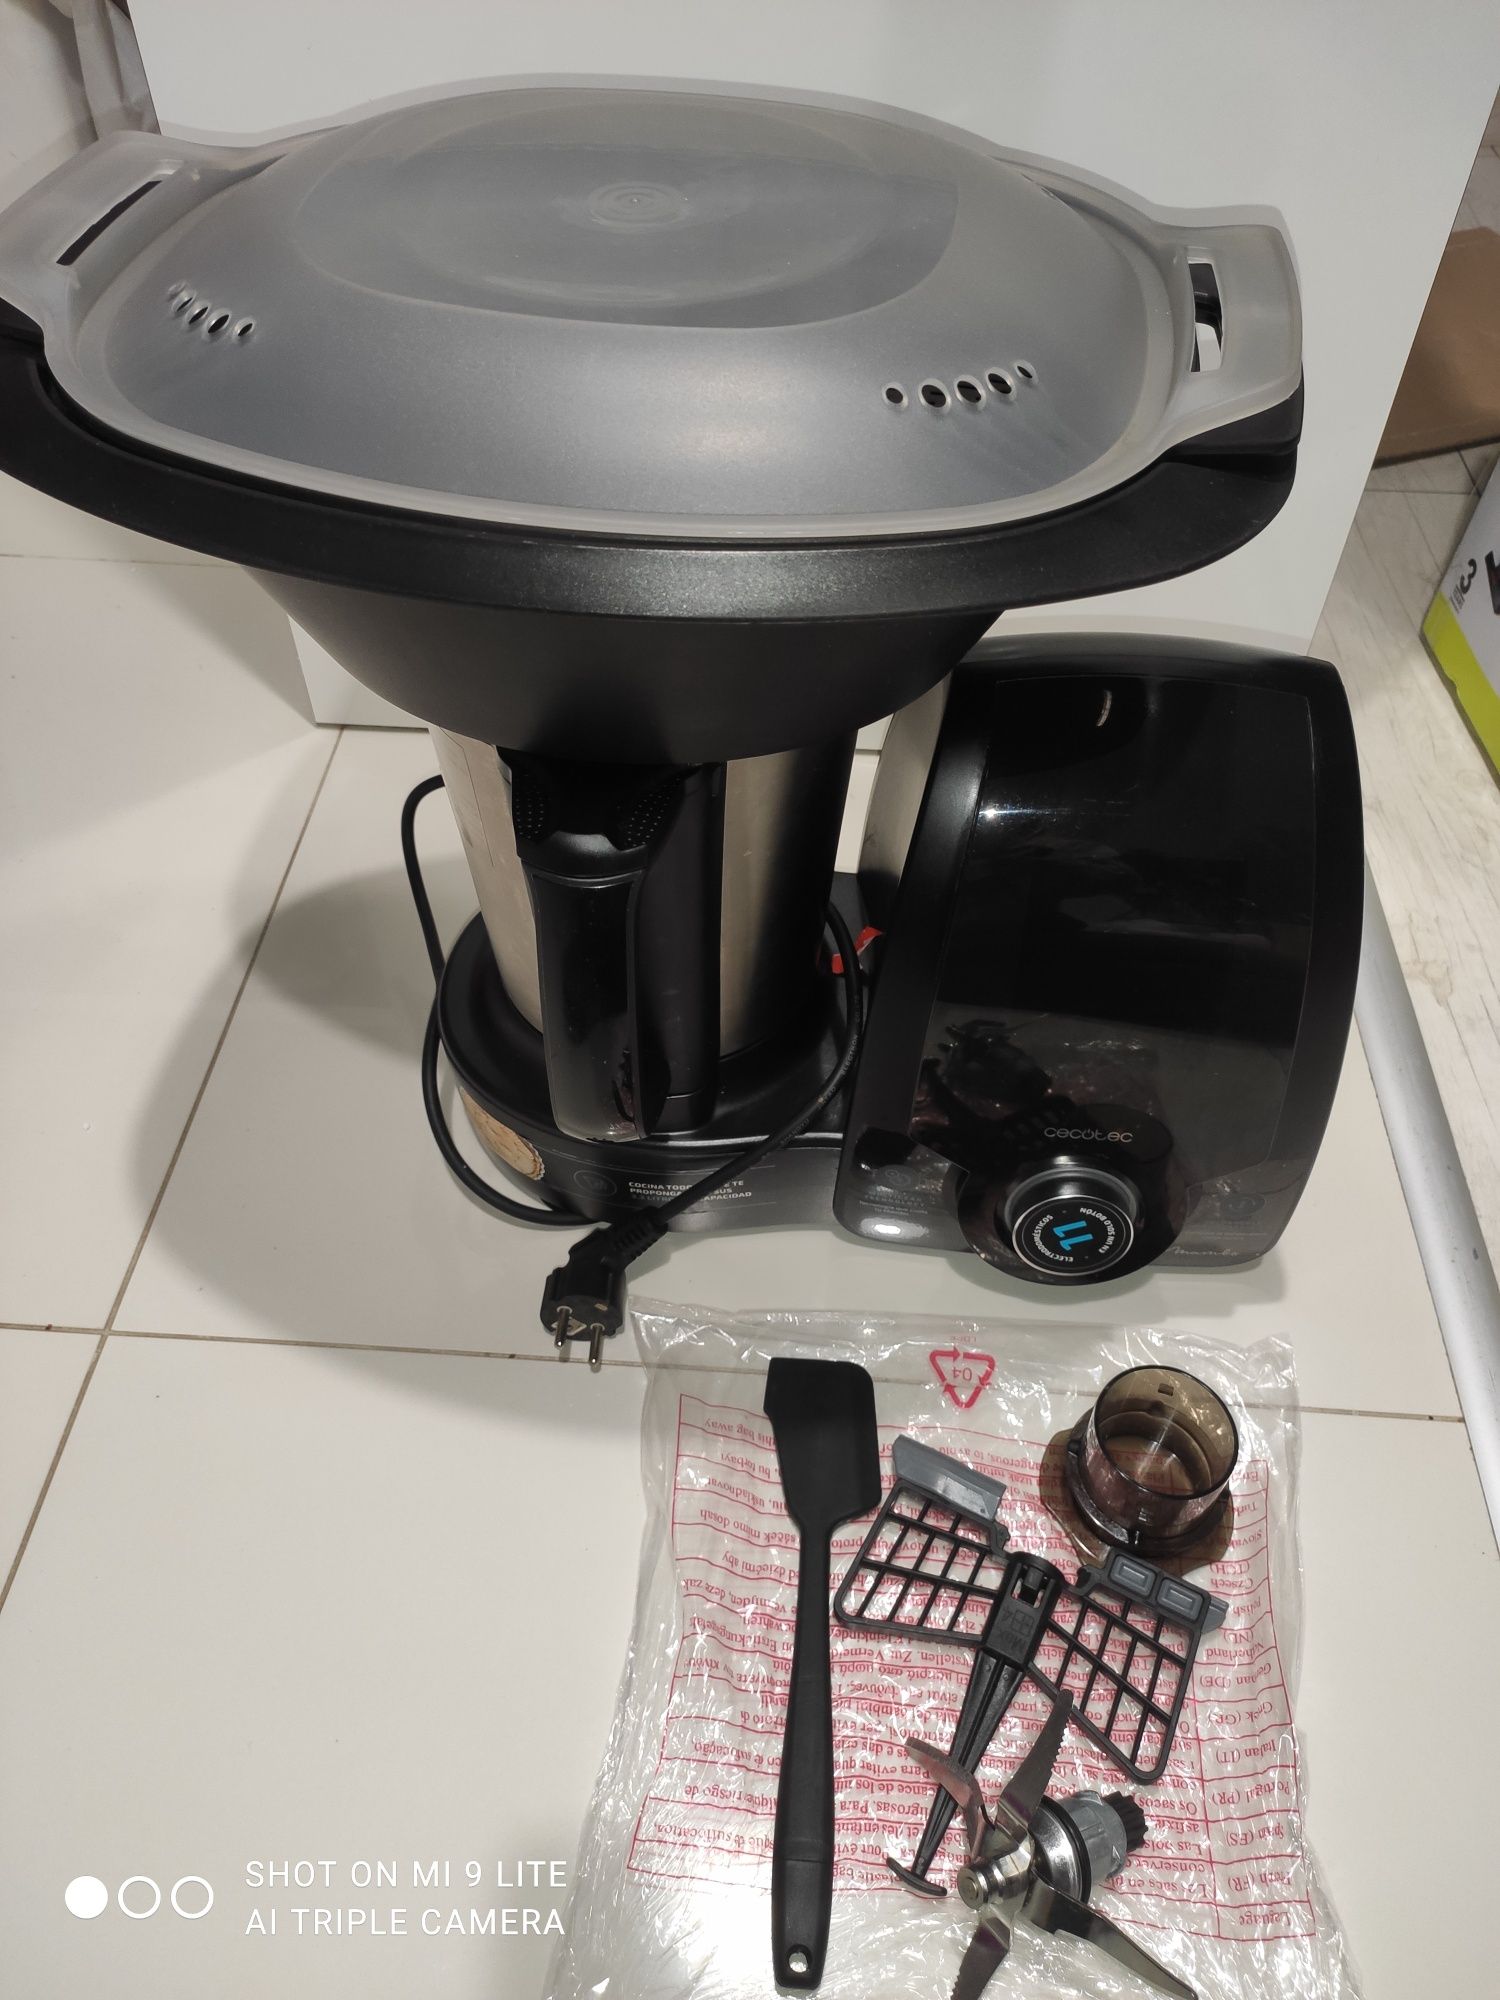 Termorobot Cecotec Mambo 9590 urządzenie wielofunkcyjne robot kuchenny